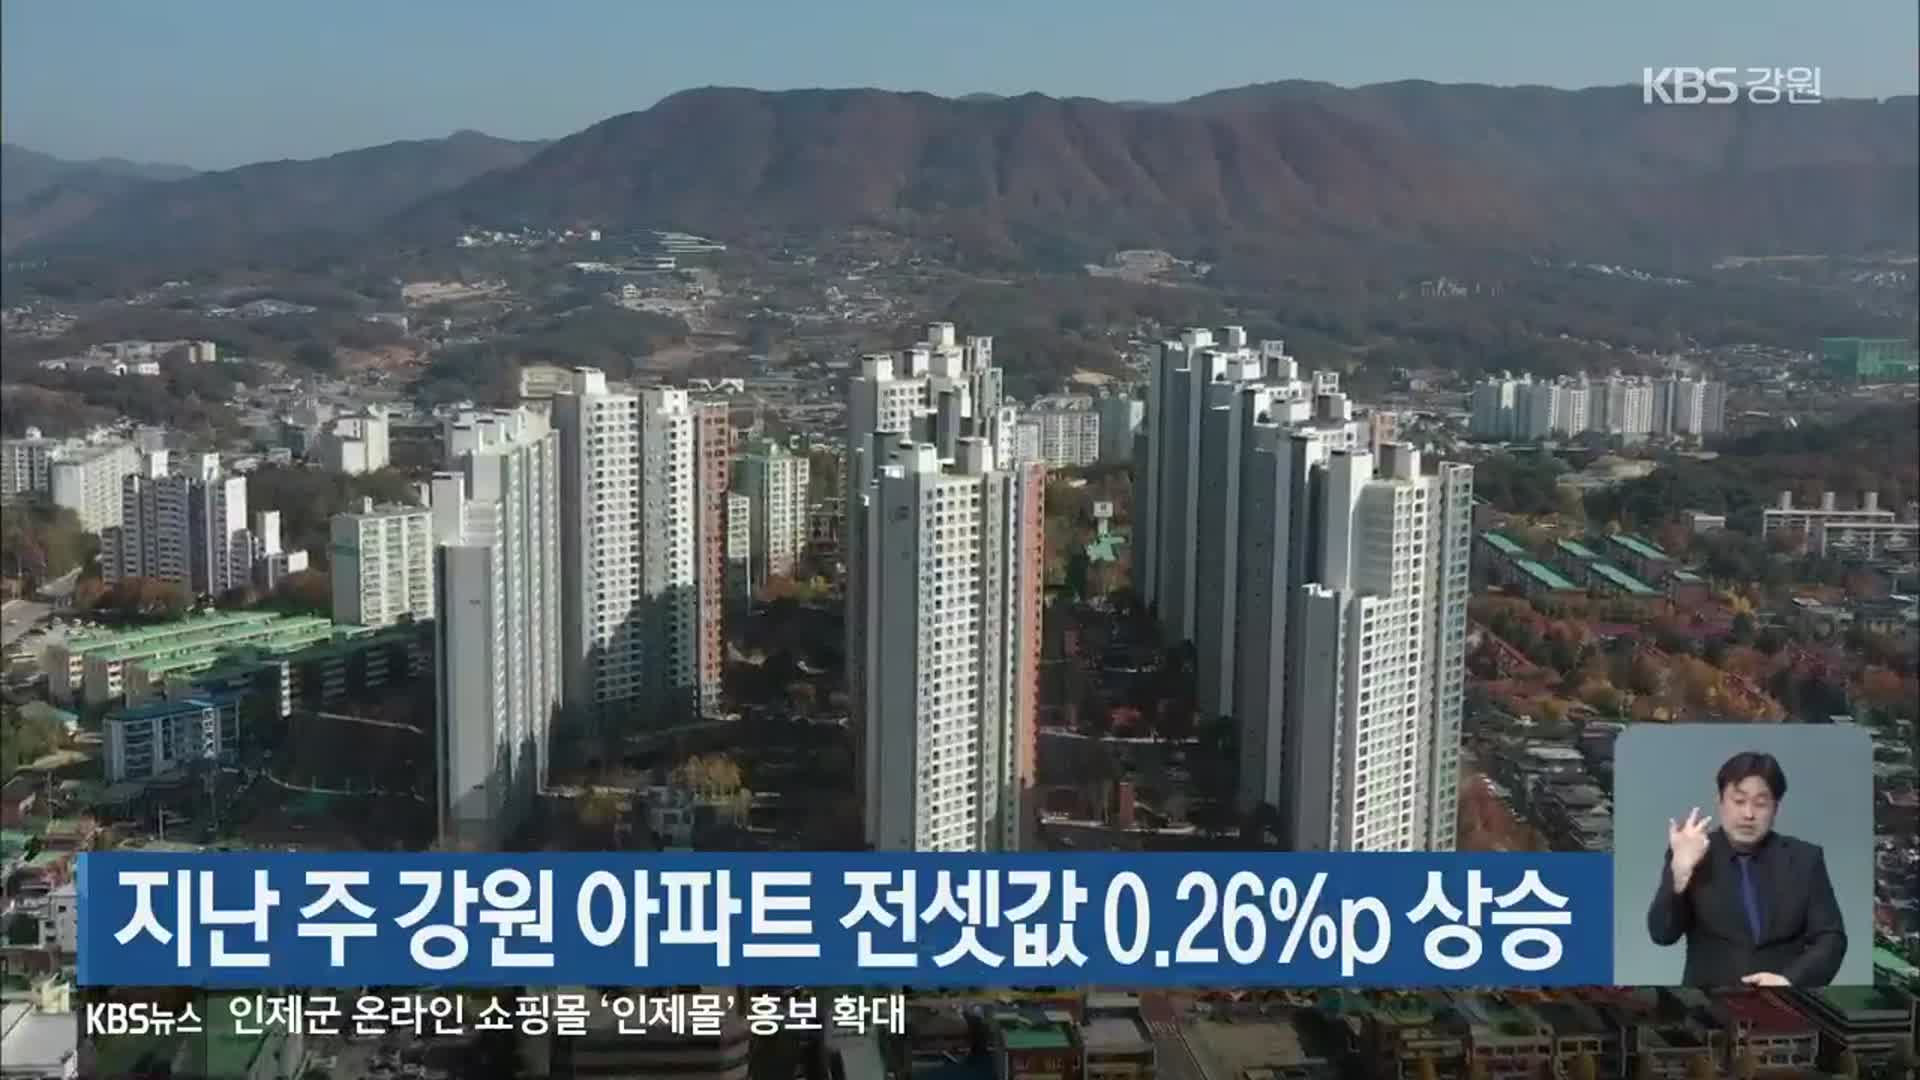 지난 주 강원 아파트 전셋값 0.26%p 상승